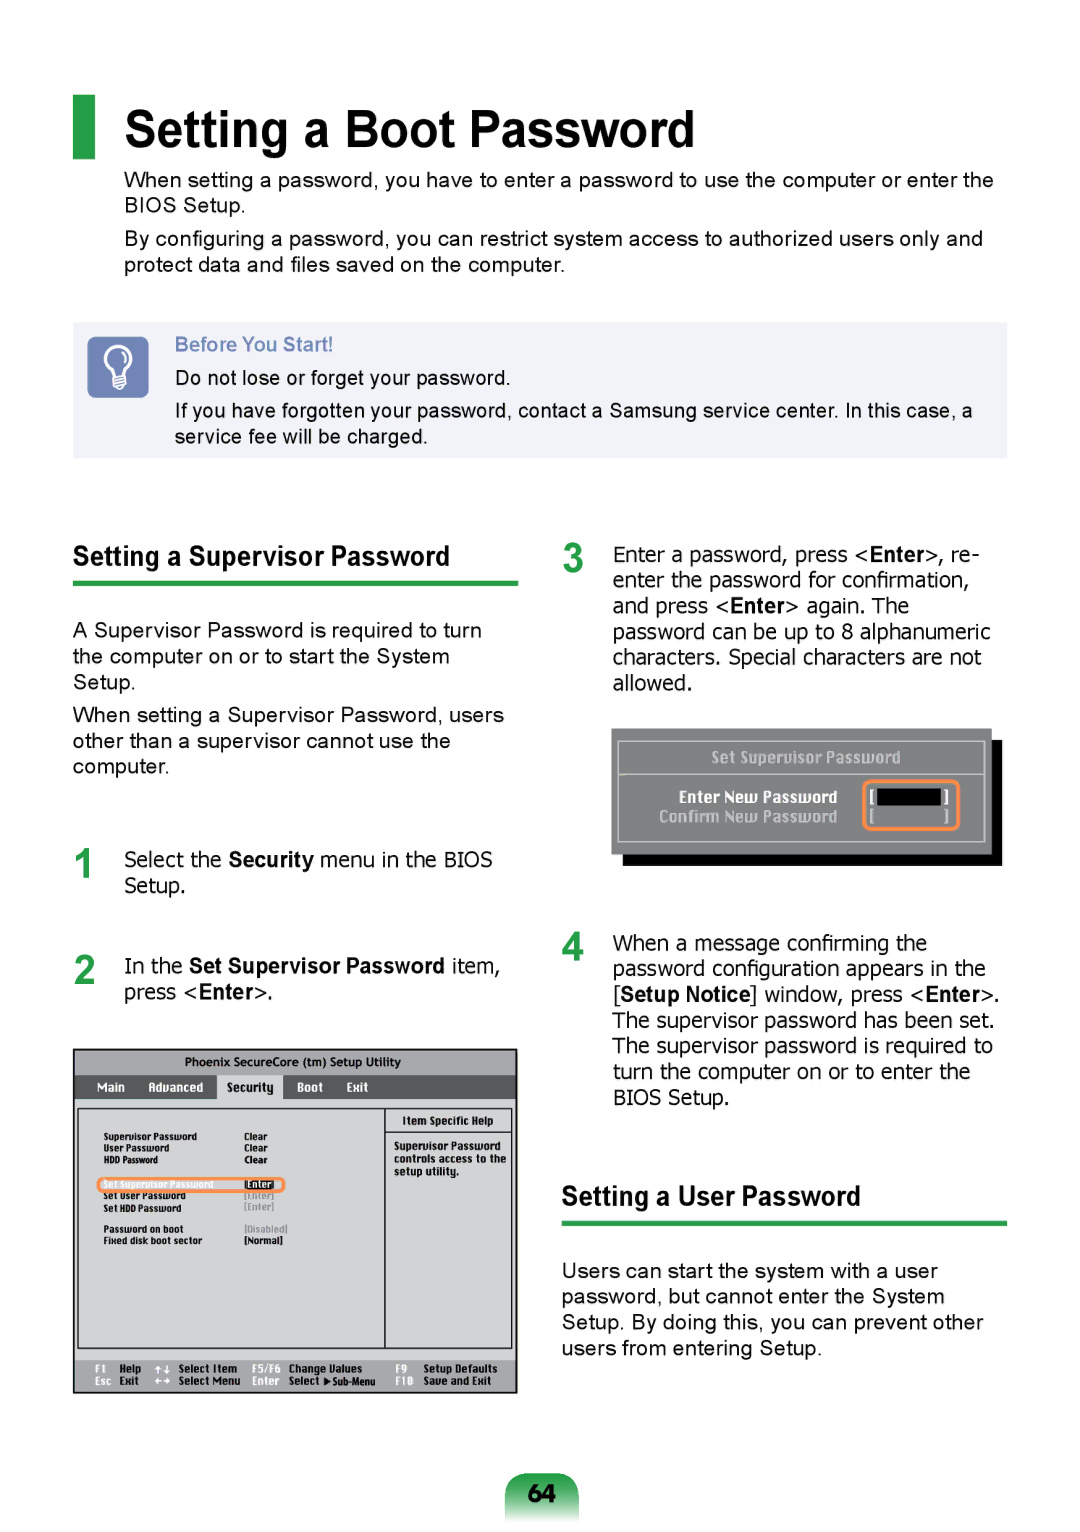 Samsung NP-R717-DA01RU, NP-R717-DA02RU Setting a Boot Password, Setting a Supervisor Password, Setting a User Password 